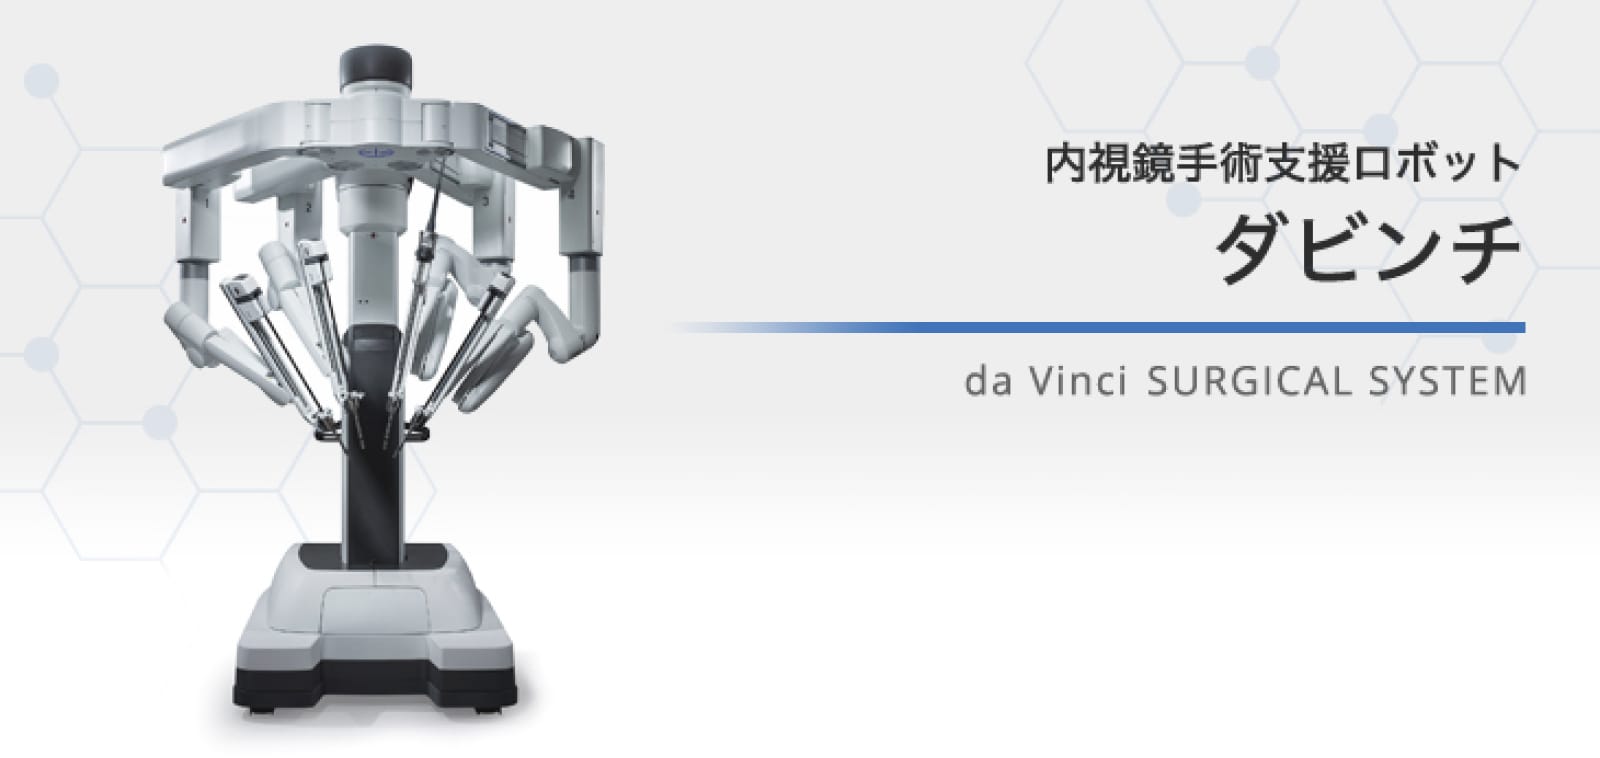 子宮全摘出 ロボット手術のキホン 補助アームを究めるda Vinci手術/高 